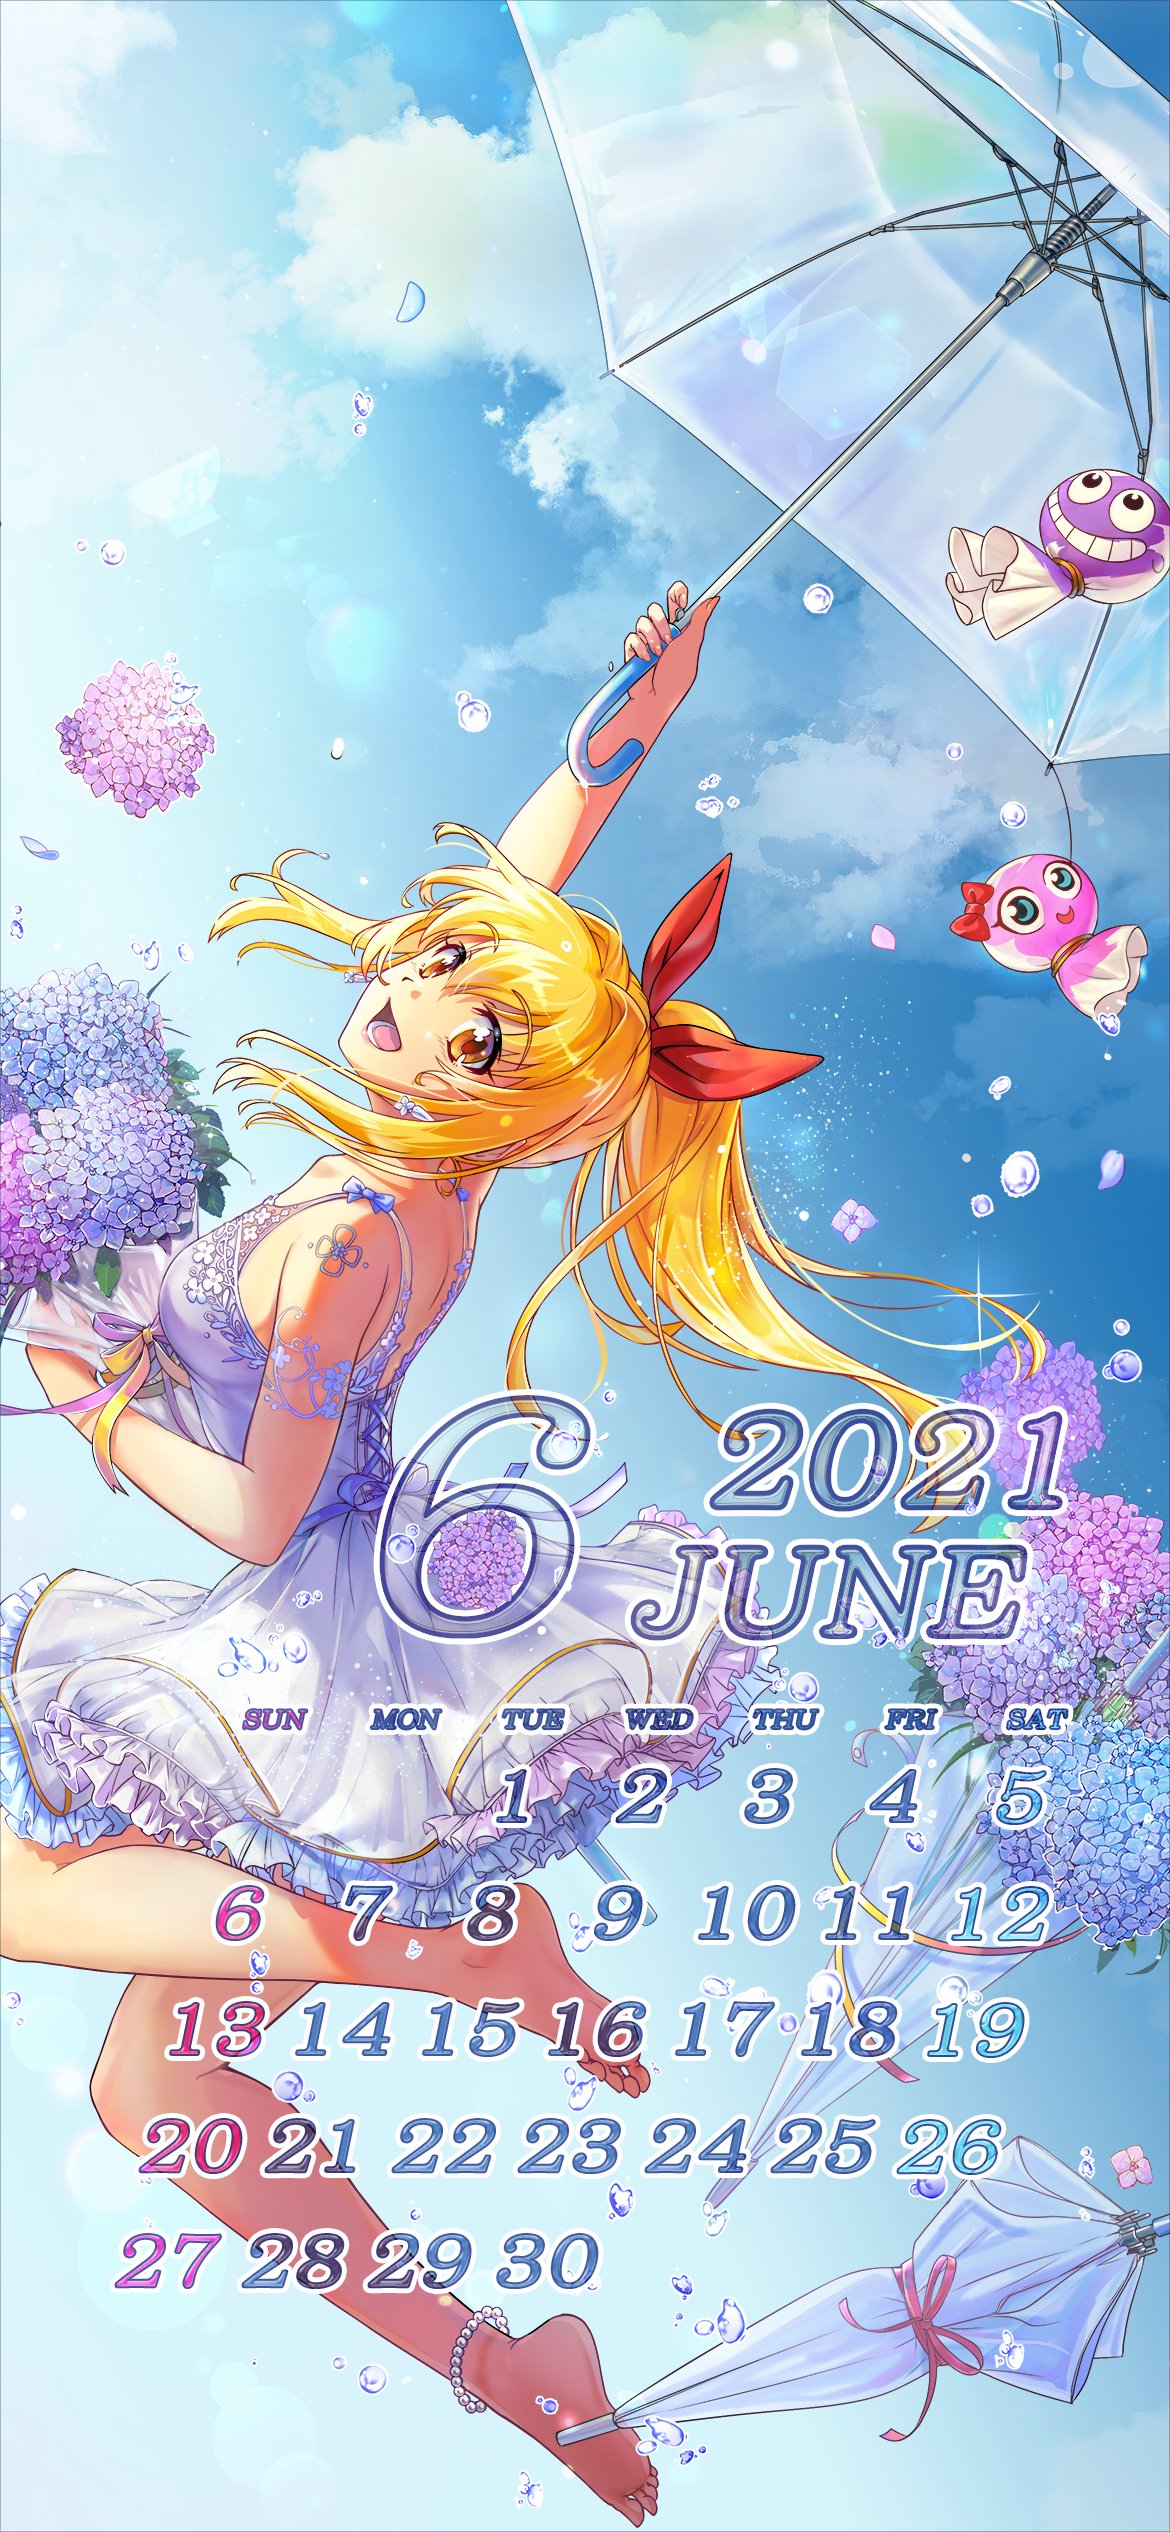 公式 Sanyo 6月の壁紙カレンダーはマリン 今月は 紫陽花 をテーマに作りました お花の色に合わせたドレス姿のマリンちゃんです スマホの壁紙にどうぞ 海物語 マリン 壁紙 カレンダー 紫陽花 てるてるラッキー てるてるラブリー